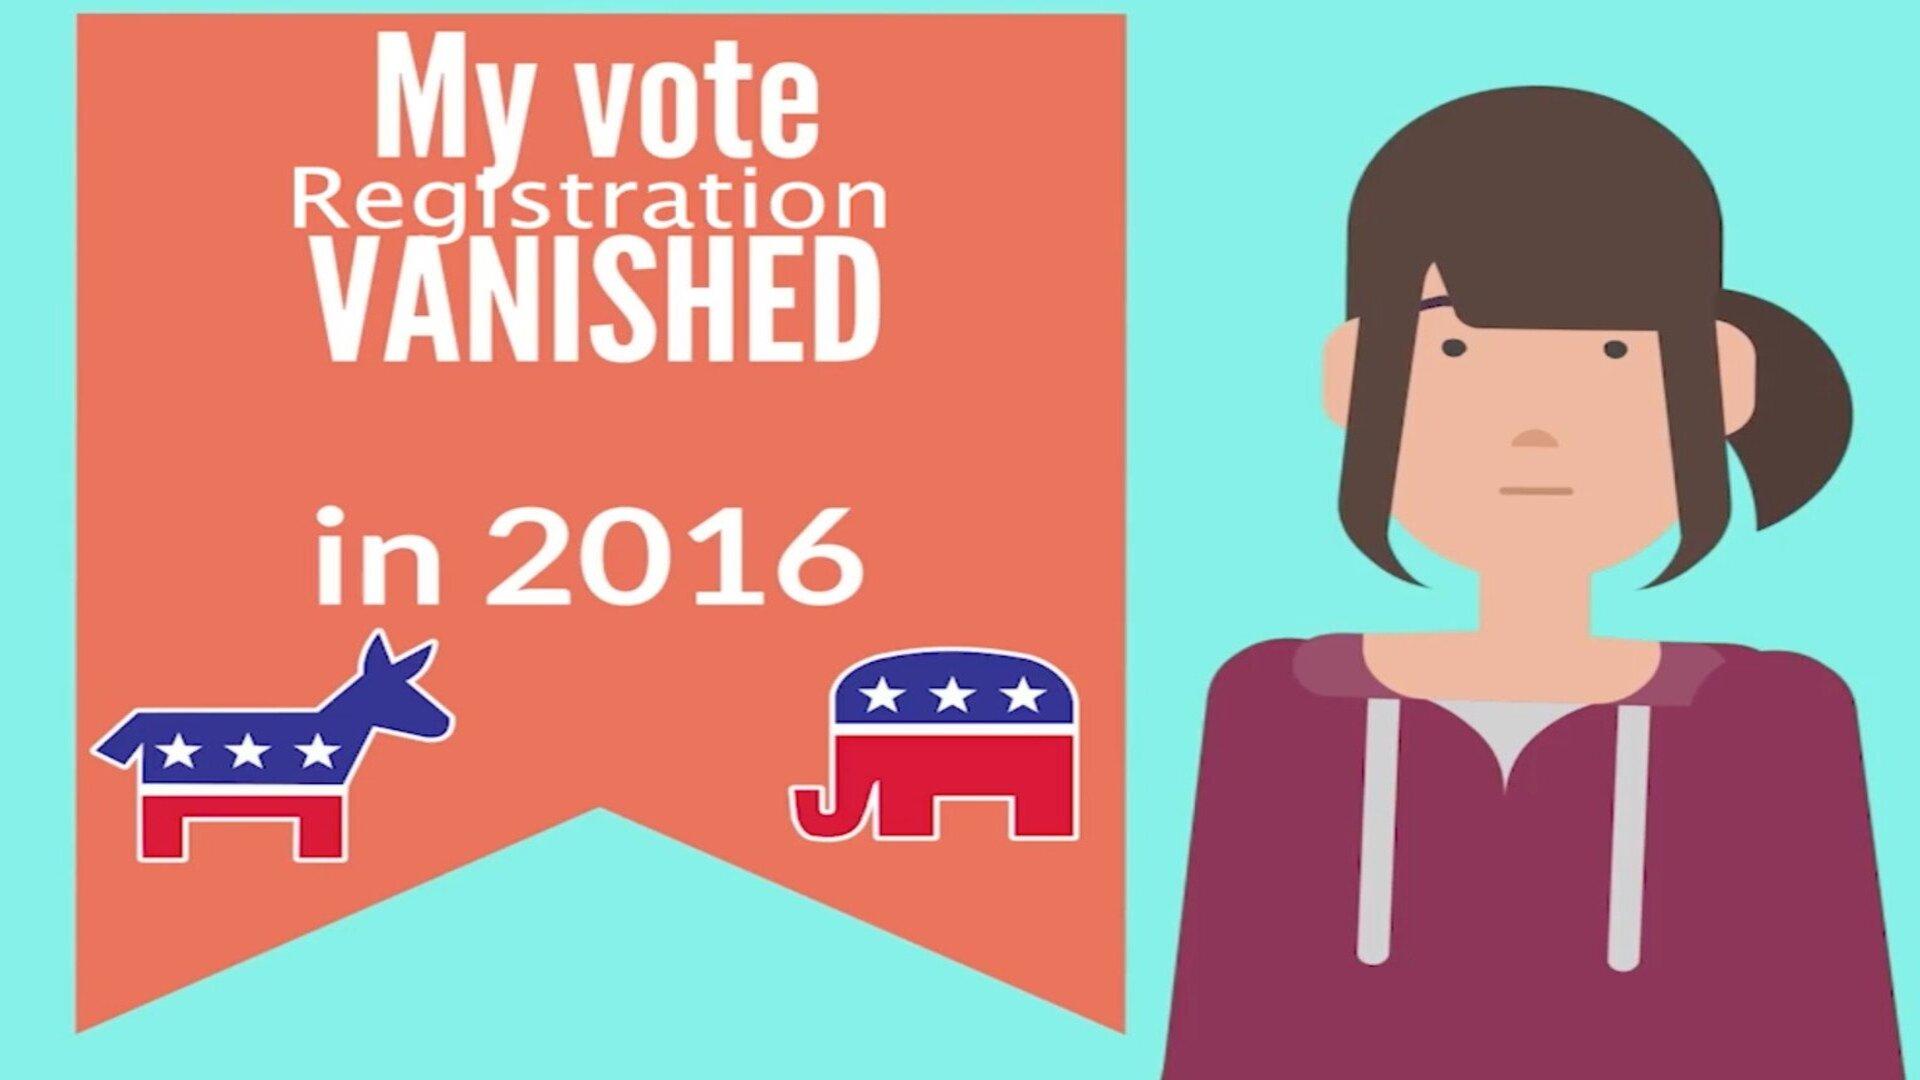 My Vote Registration Vanished in 2016